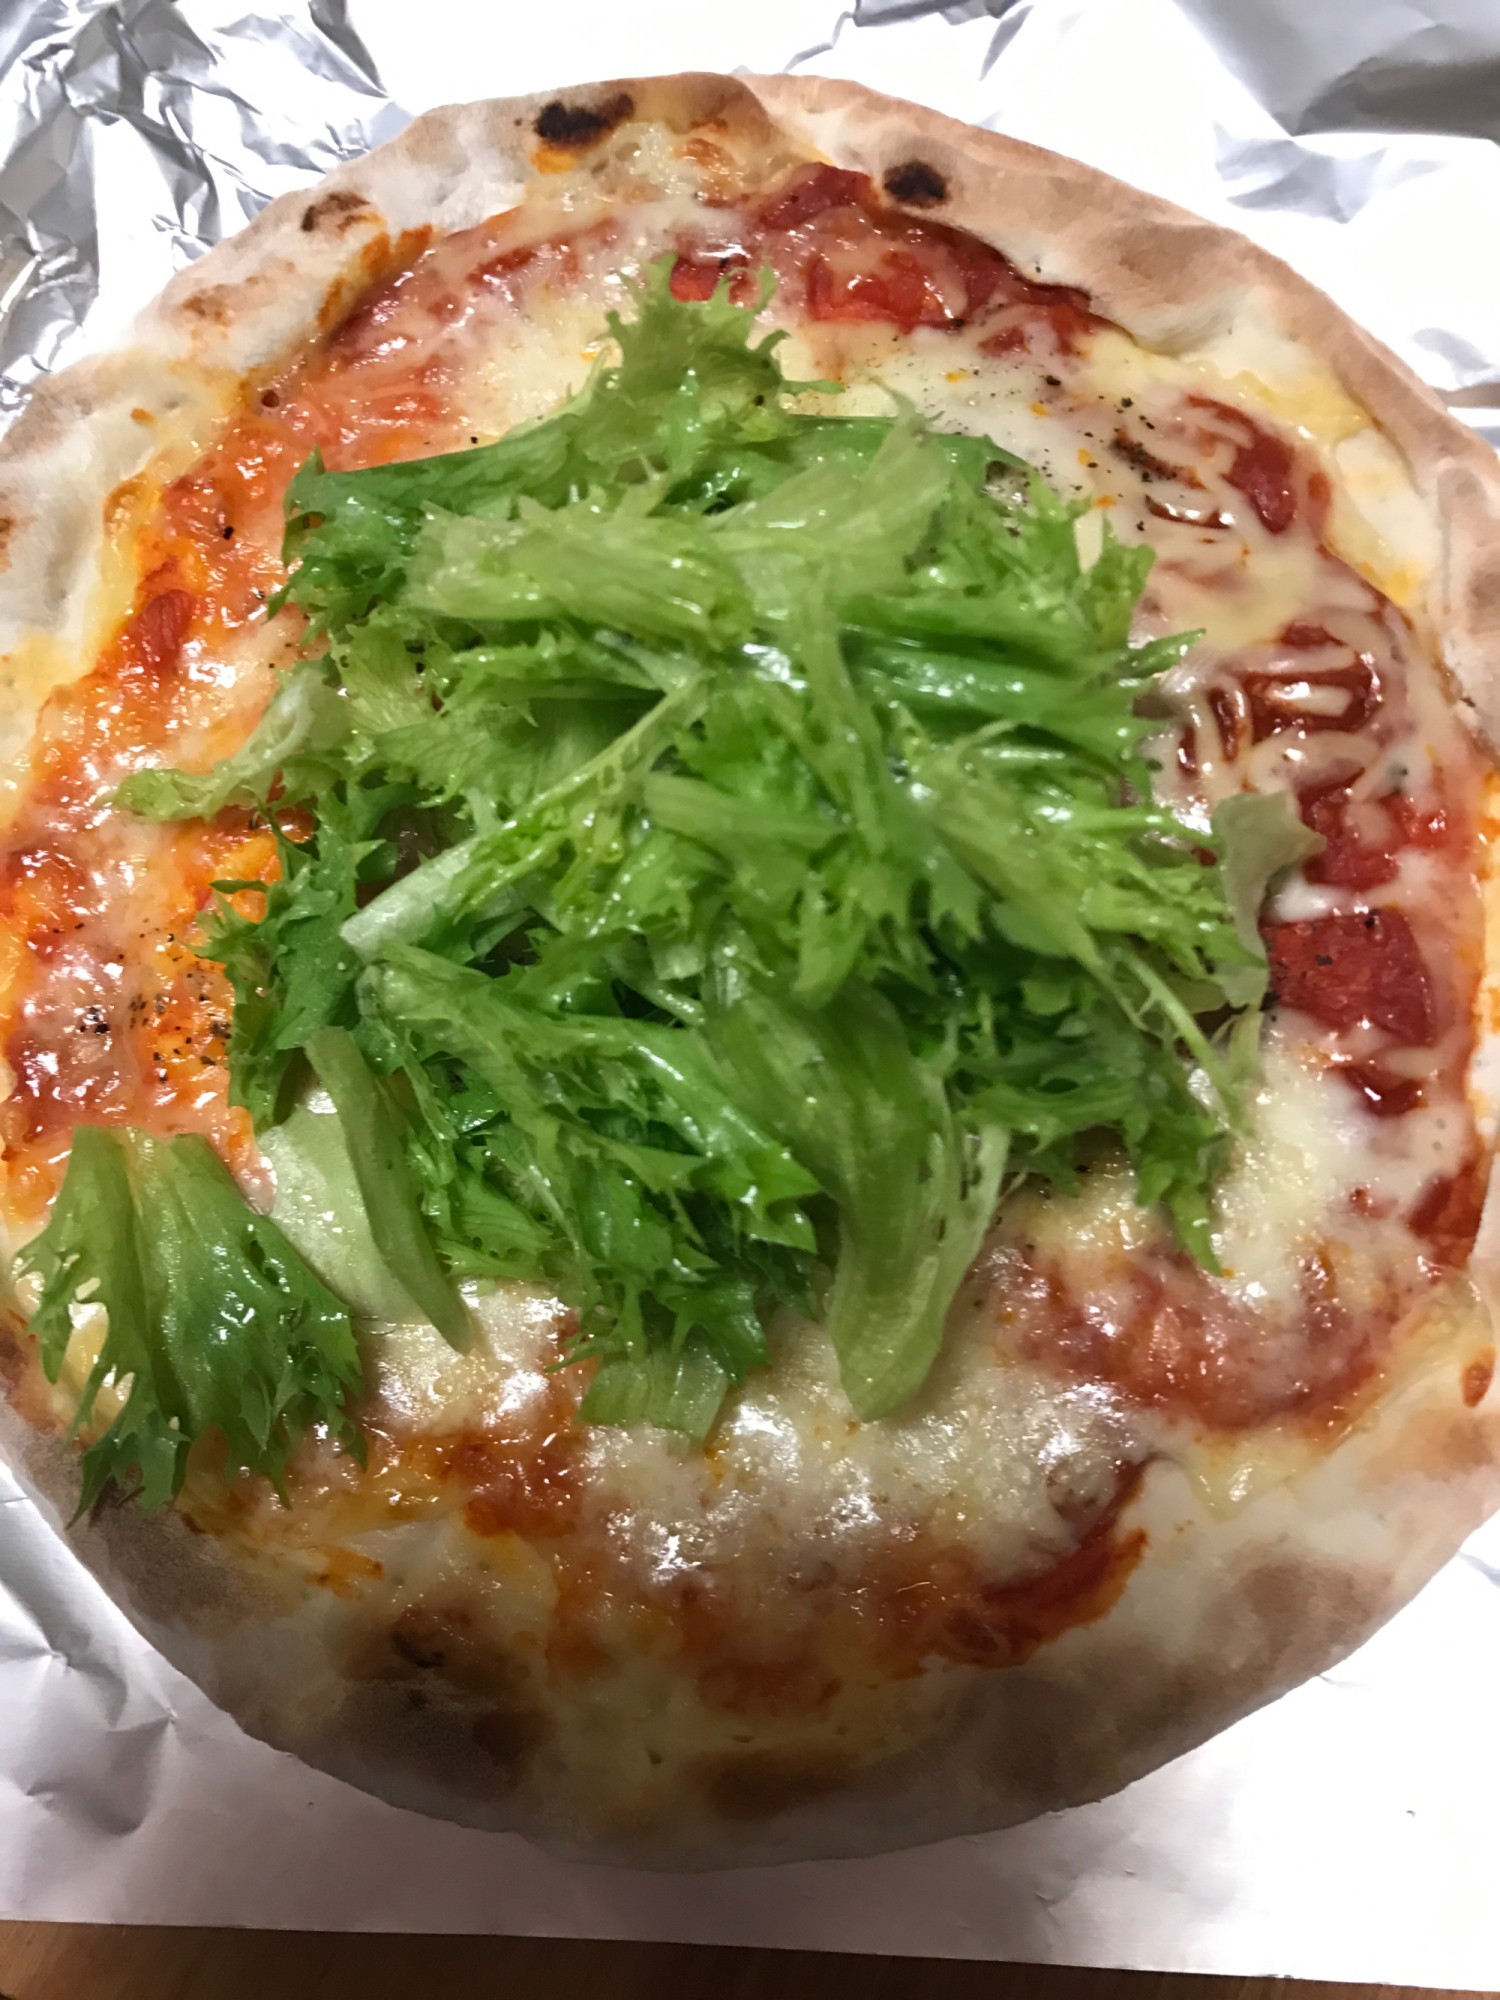 フリルレタスサラダのせピザ